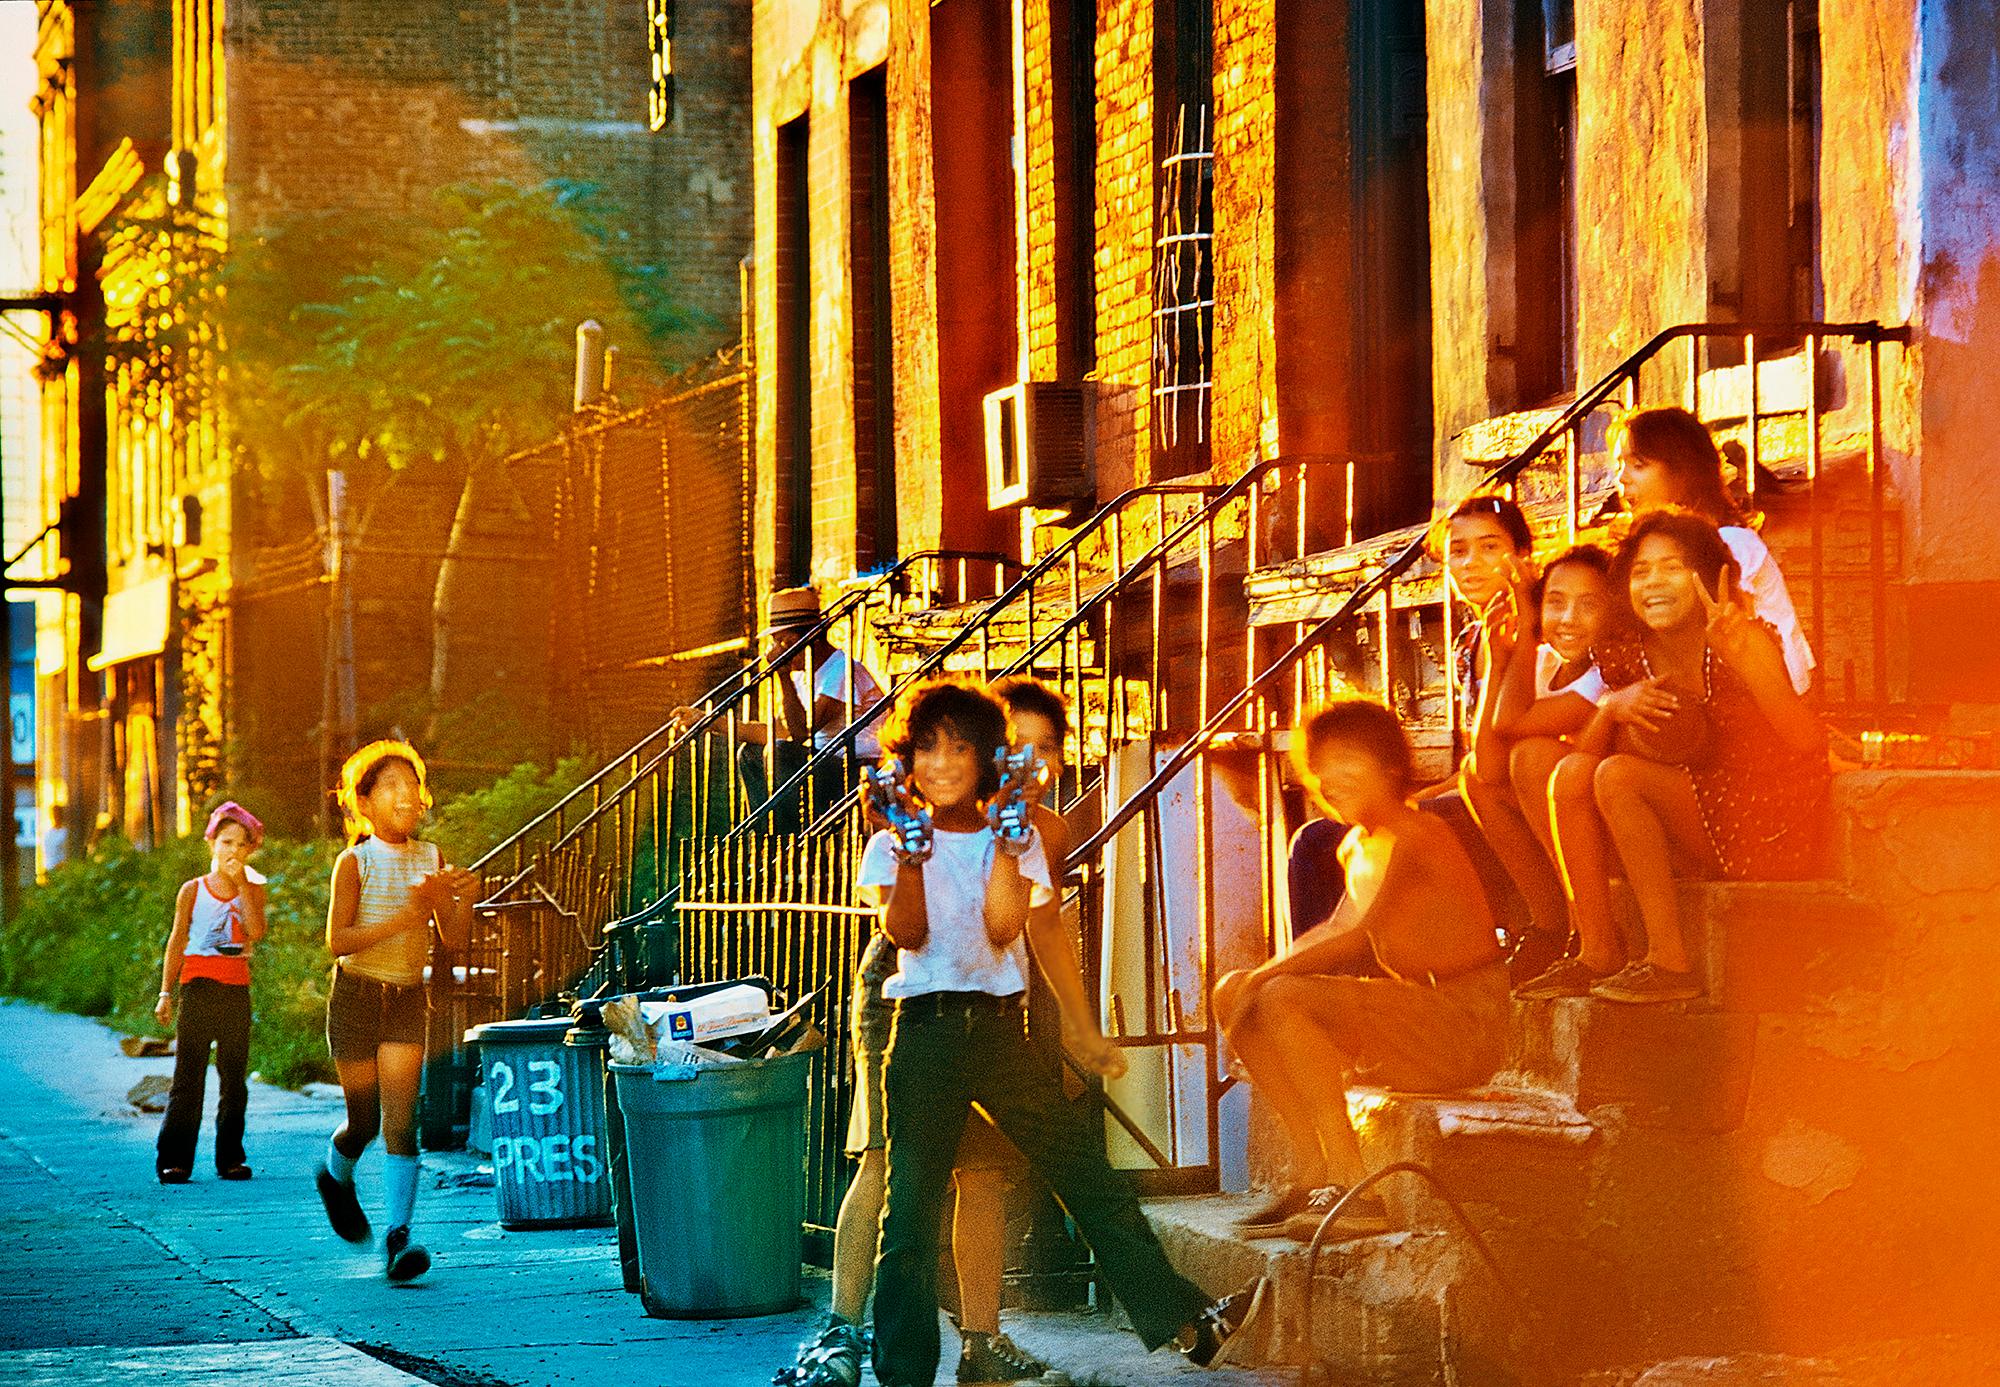 Kids on Stoop in Red Hood Brooklyn, Neighborhood  Vieux Brooklyn 